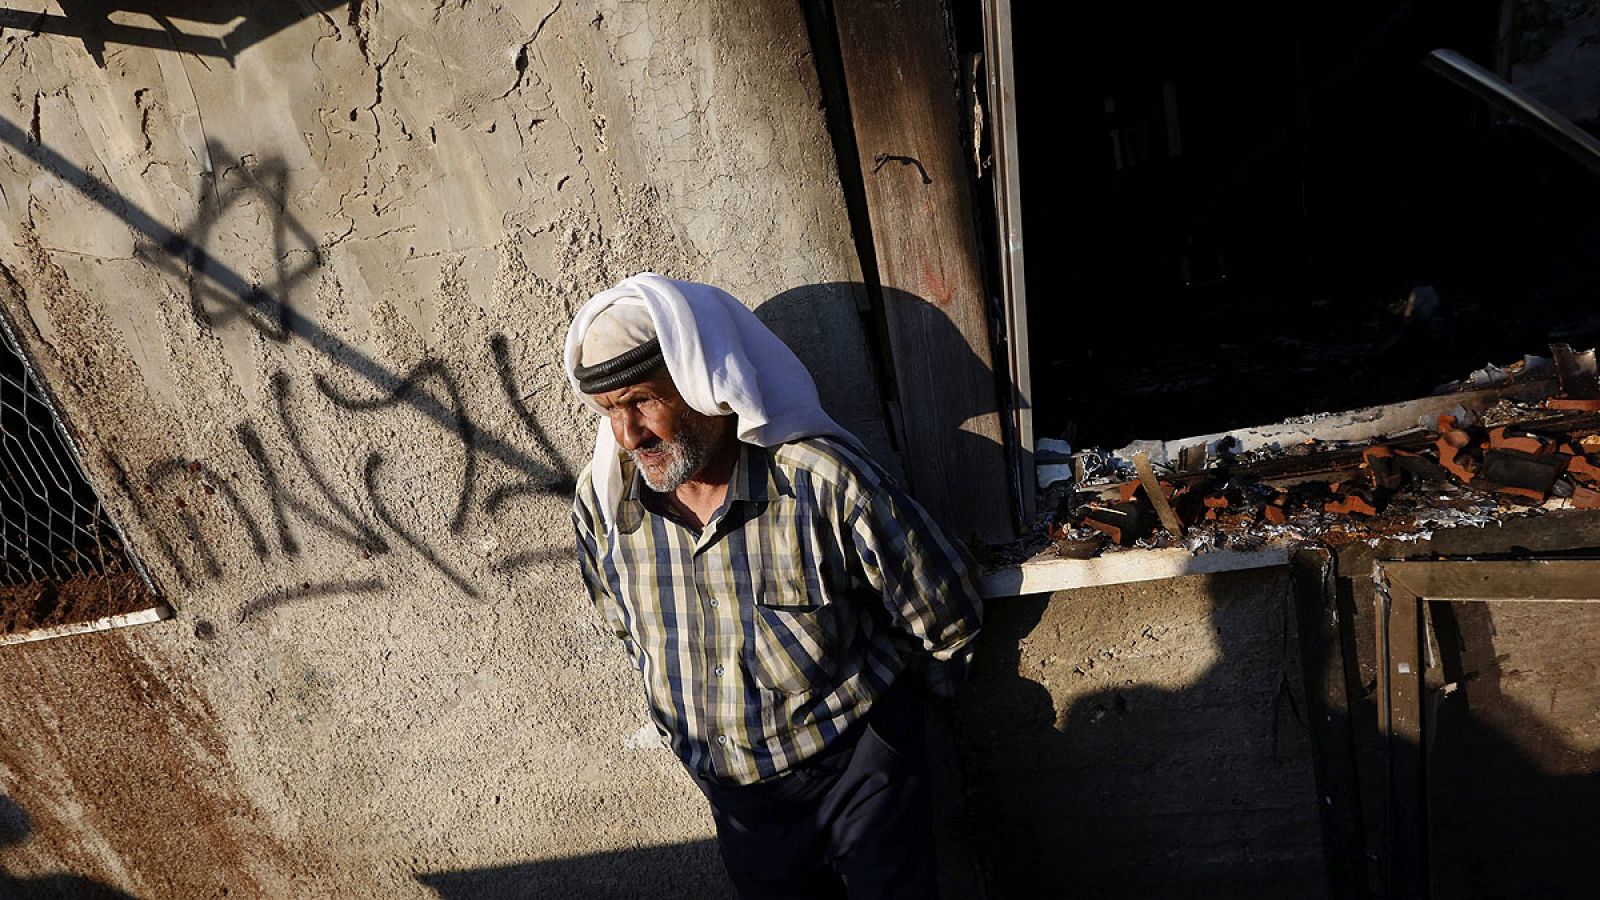 Un familiar de la víctima junto a la casa quemada en Douma, donde los atacantes han escrito "venganza" en hebreo